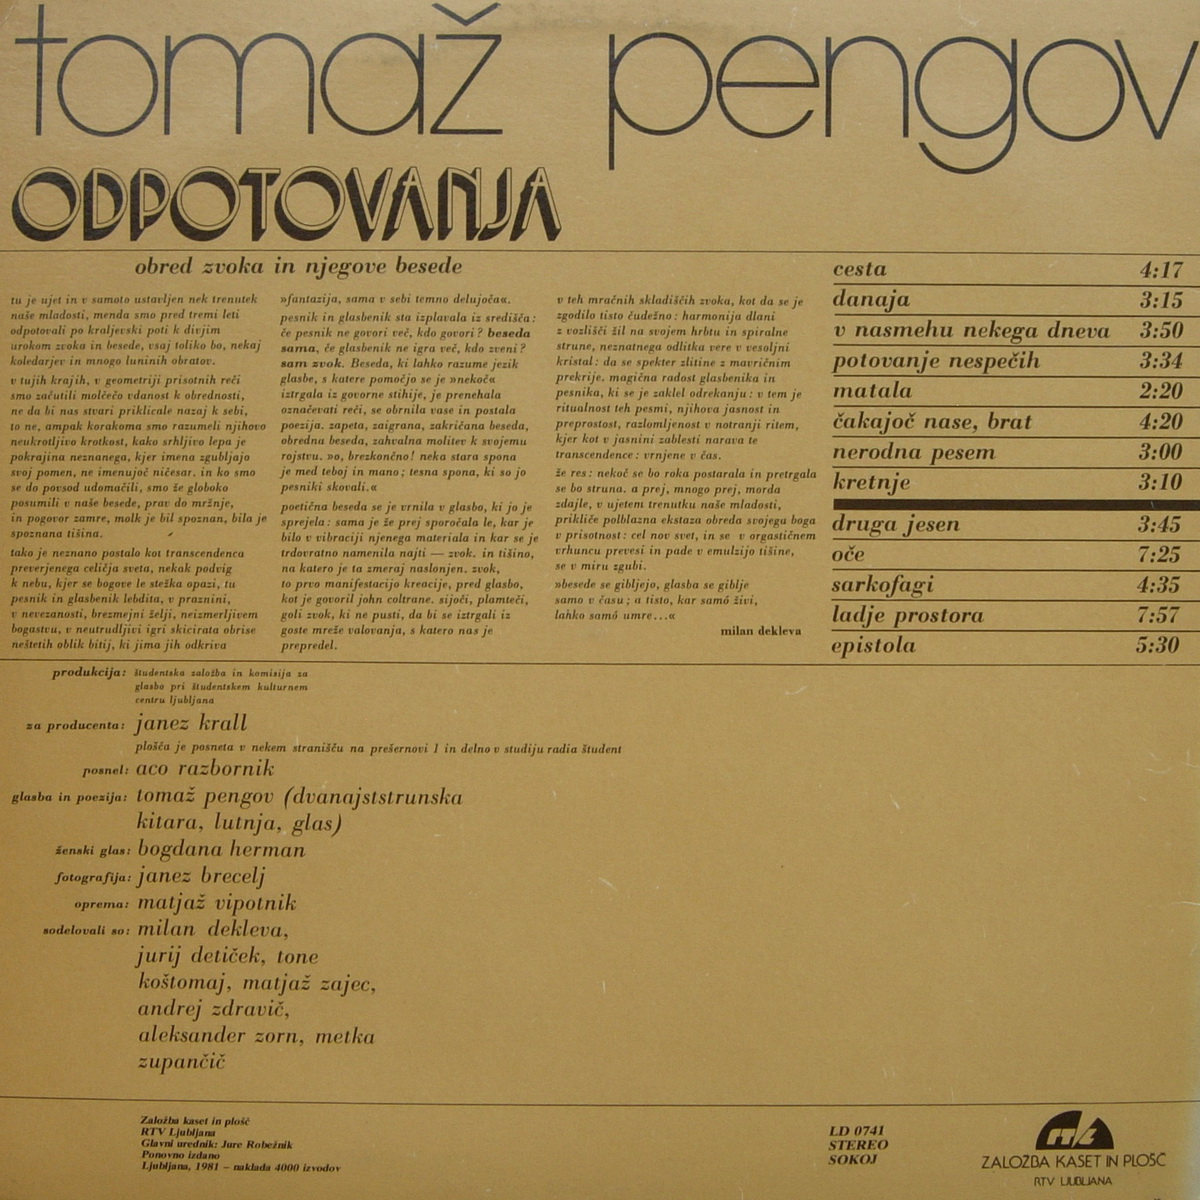 Tomaz Pengov 1973 Odpotovanja b